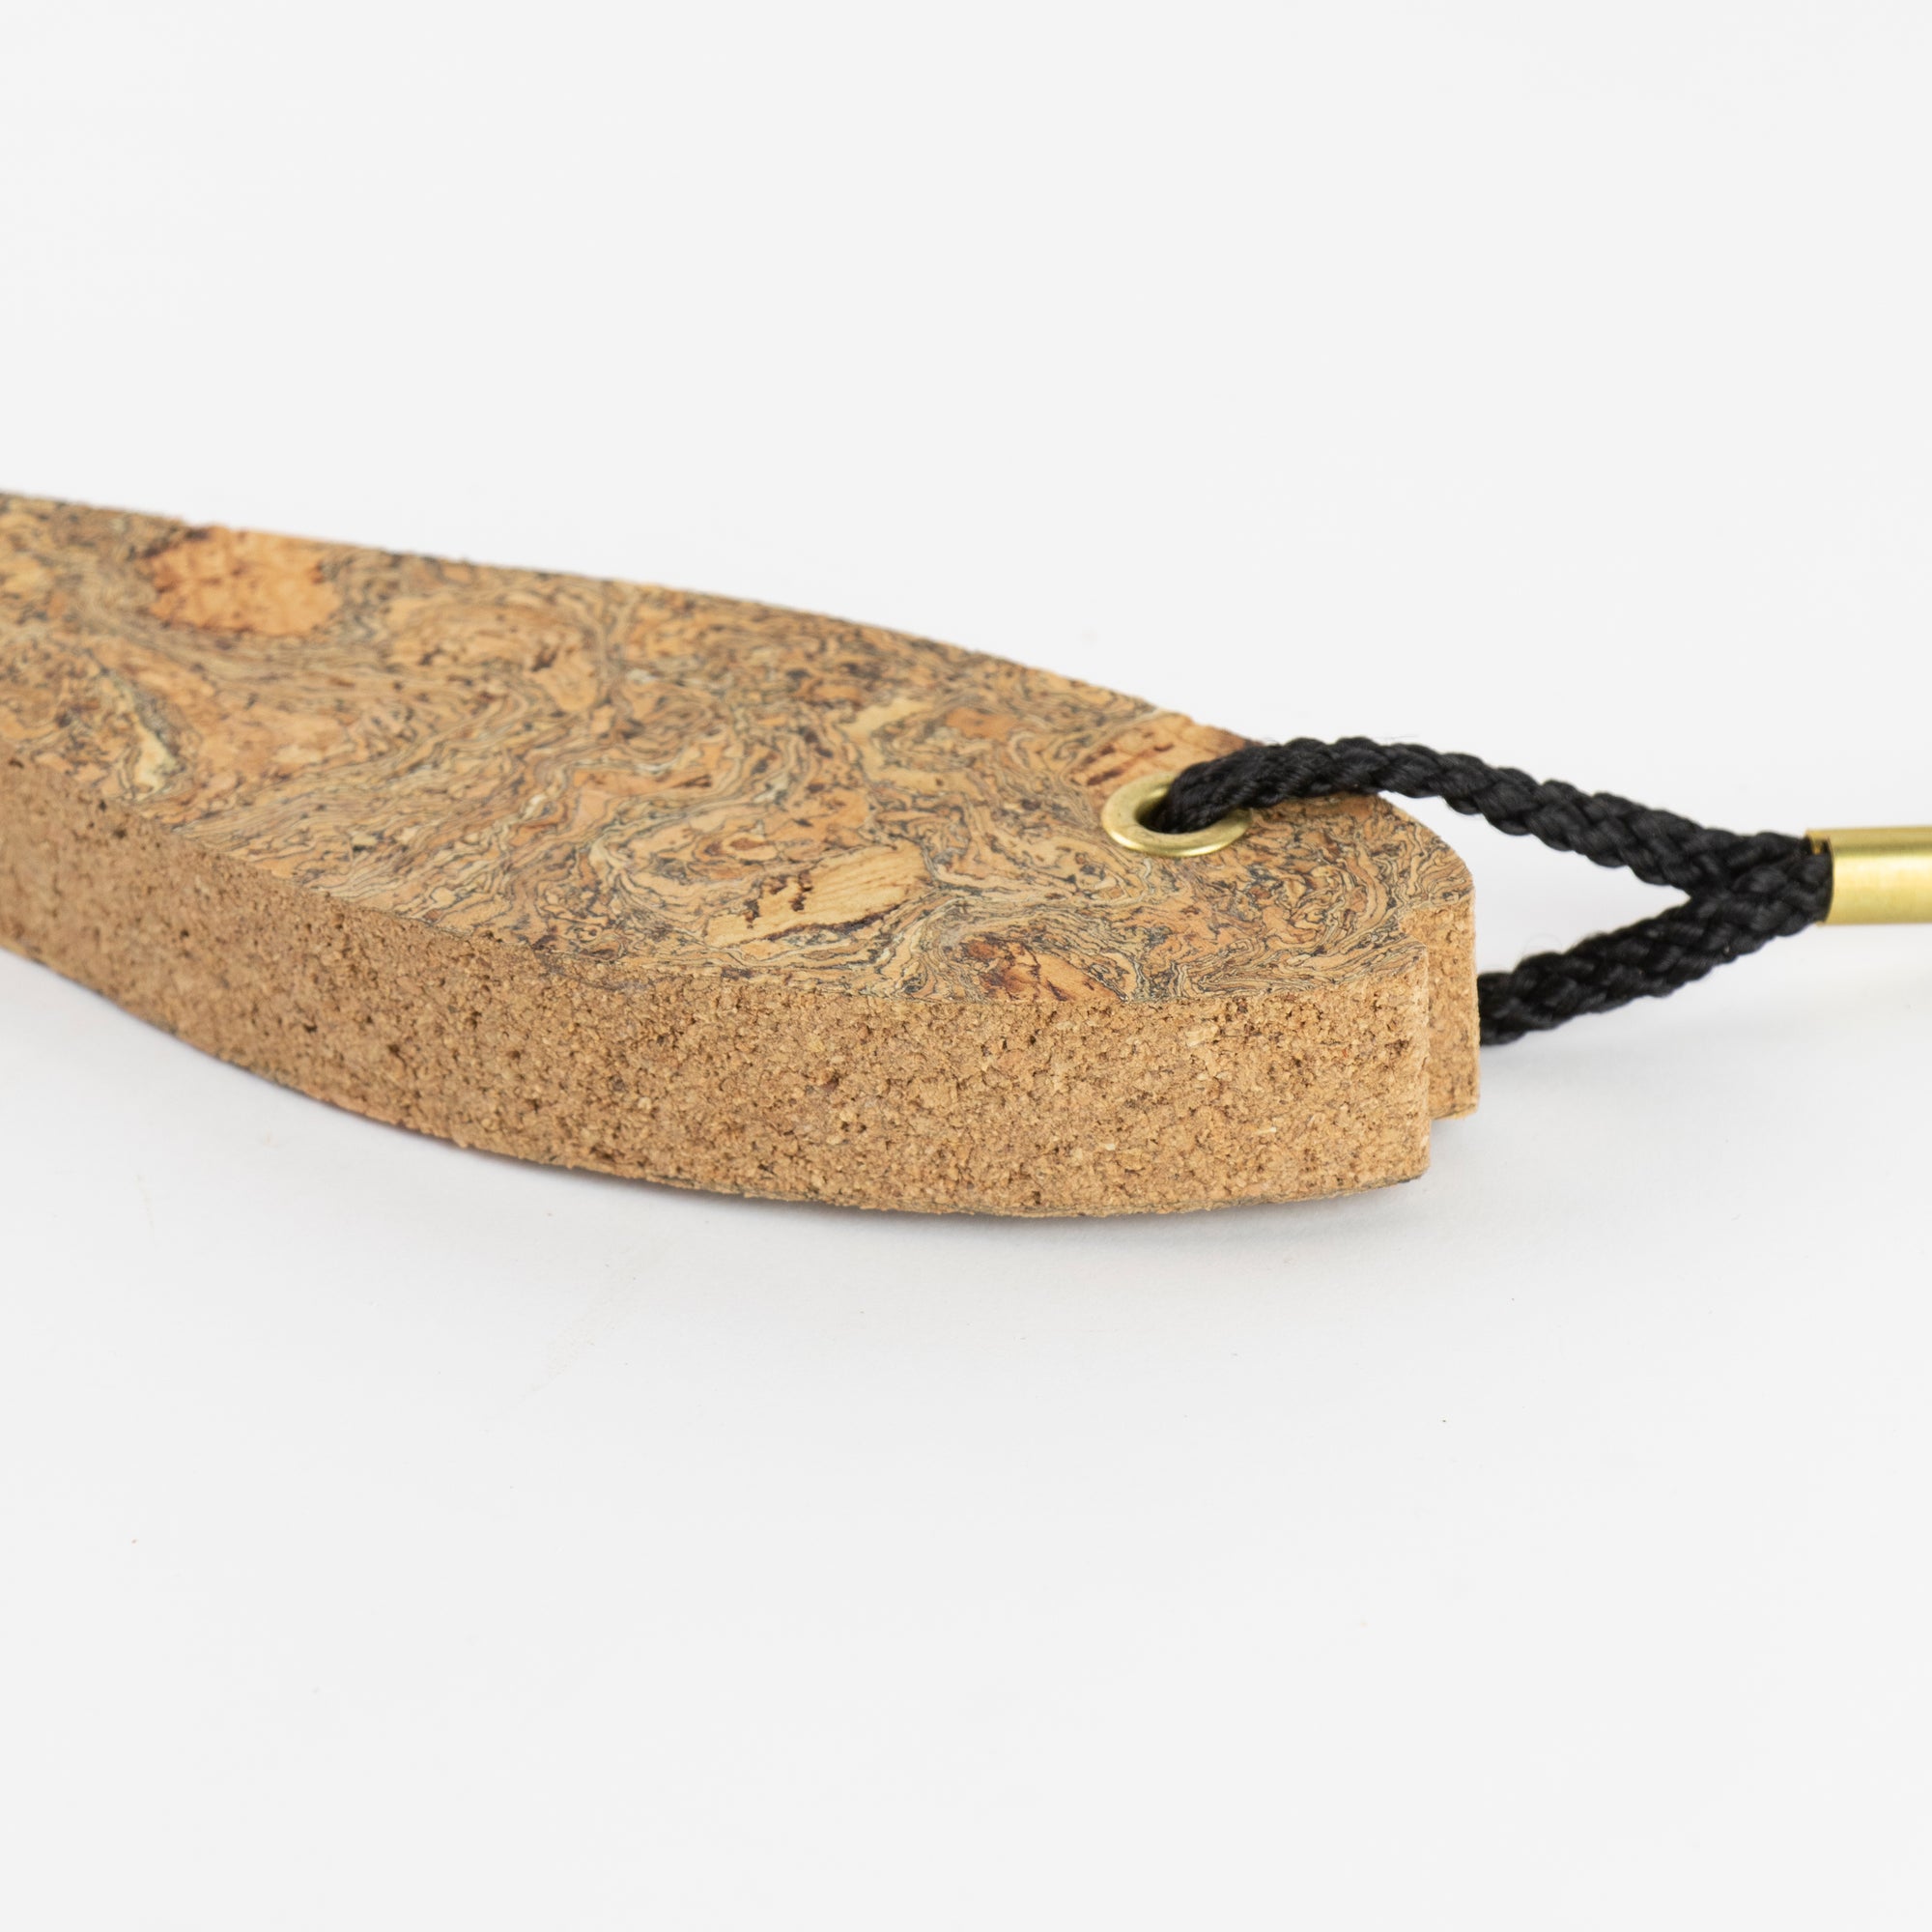 Sustainable cork fish keyring